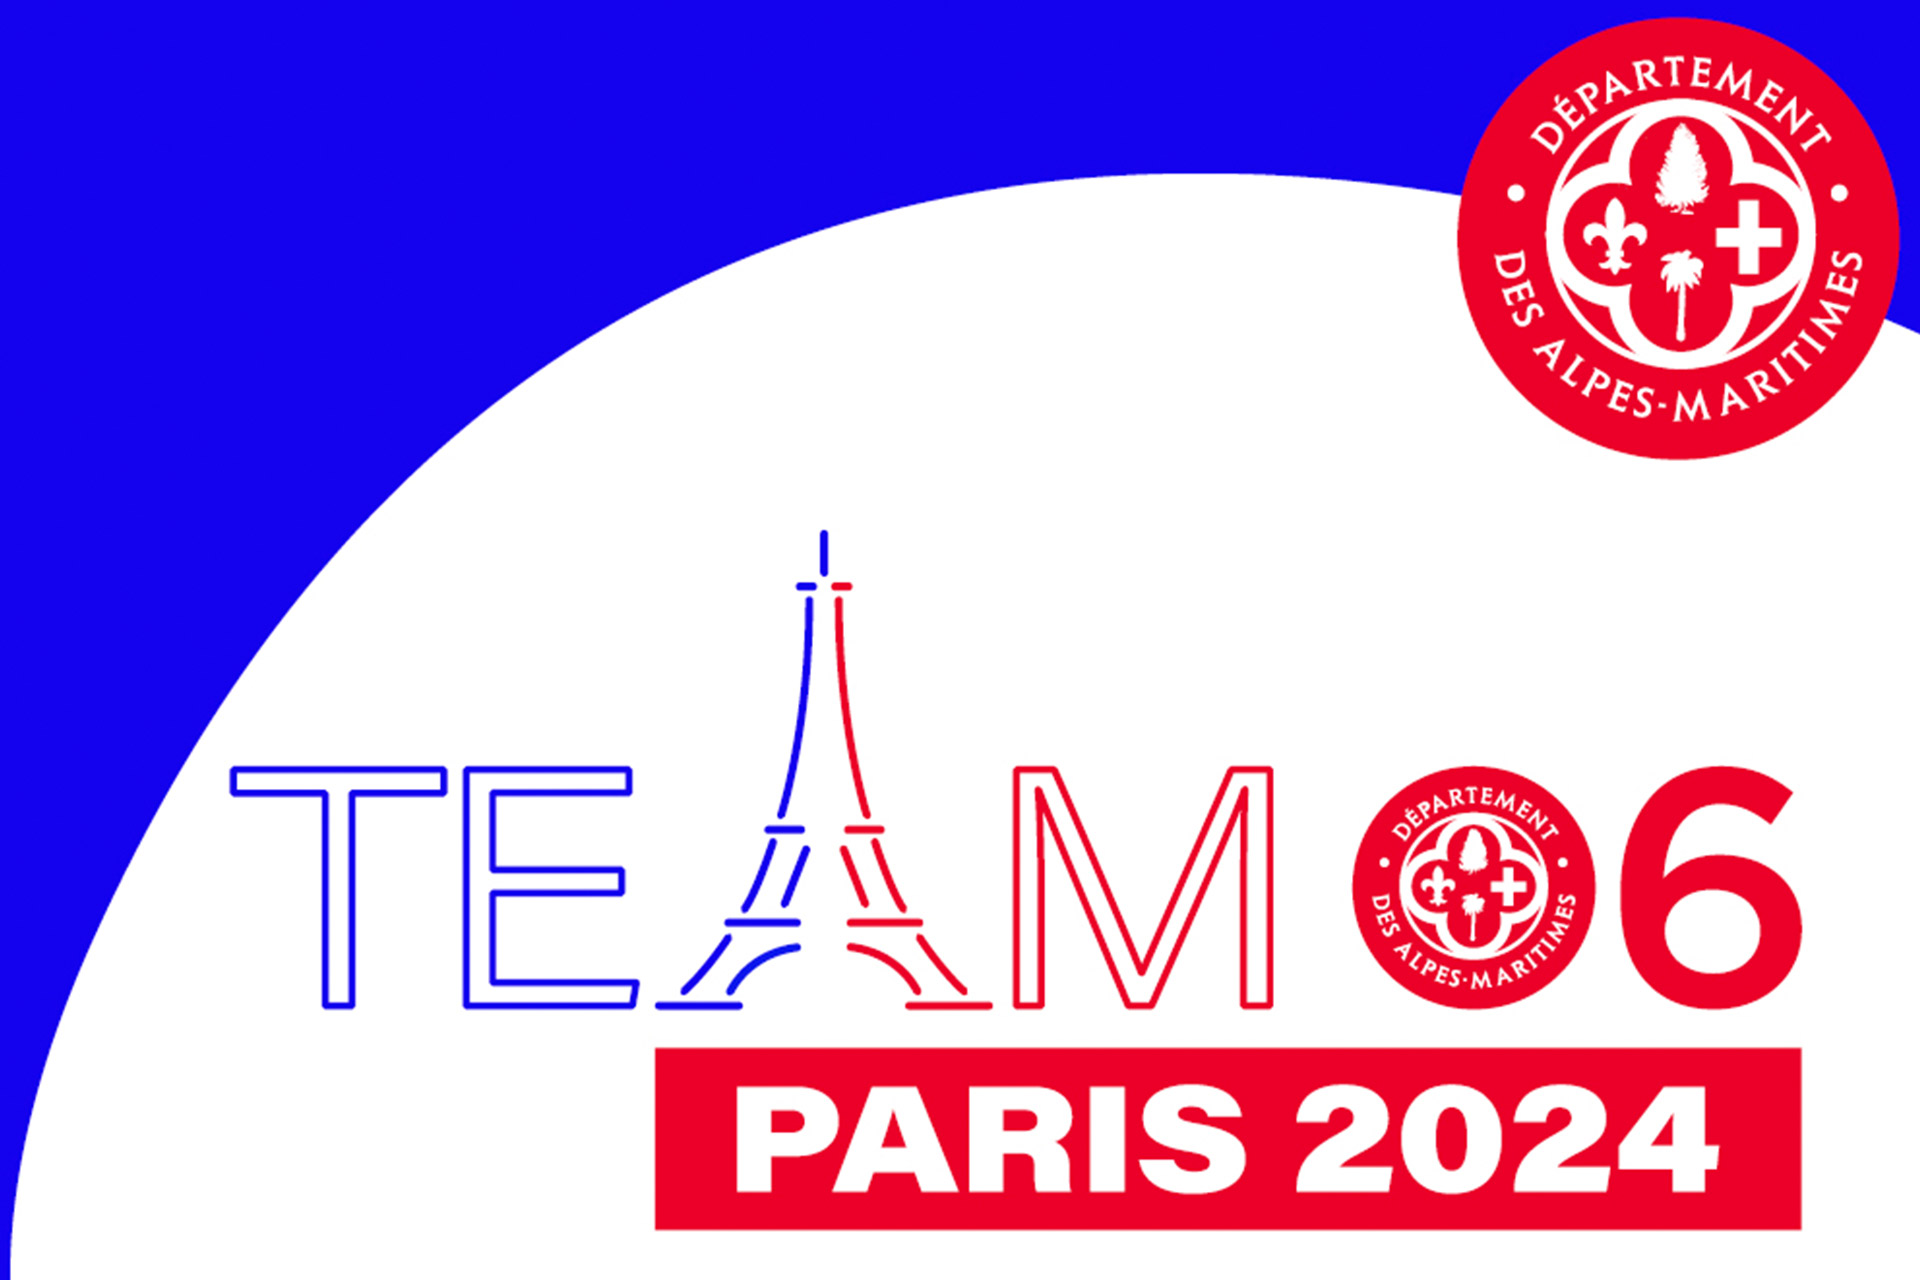 Qui sont les athlètes du 06 sélectionnés et sélectionnables pour les JO de Paris 2024 ?